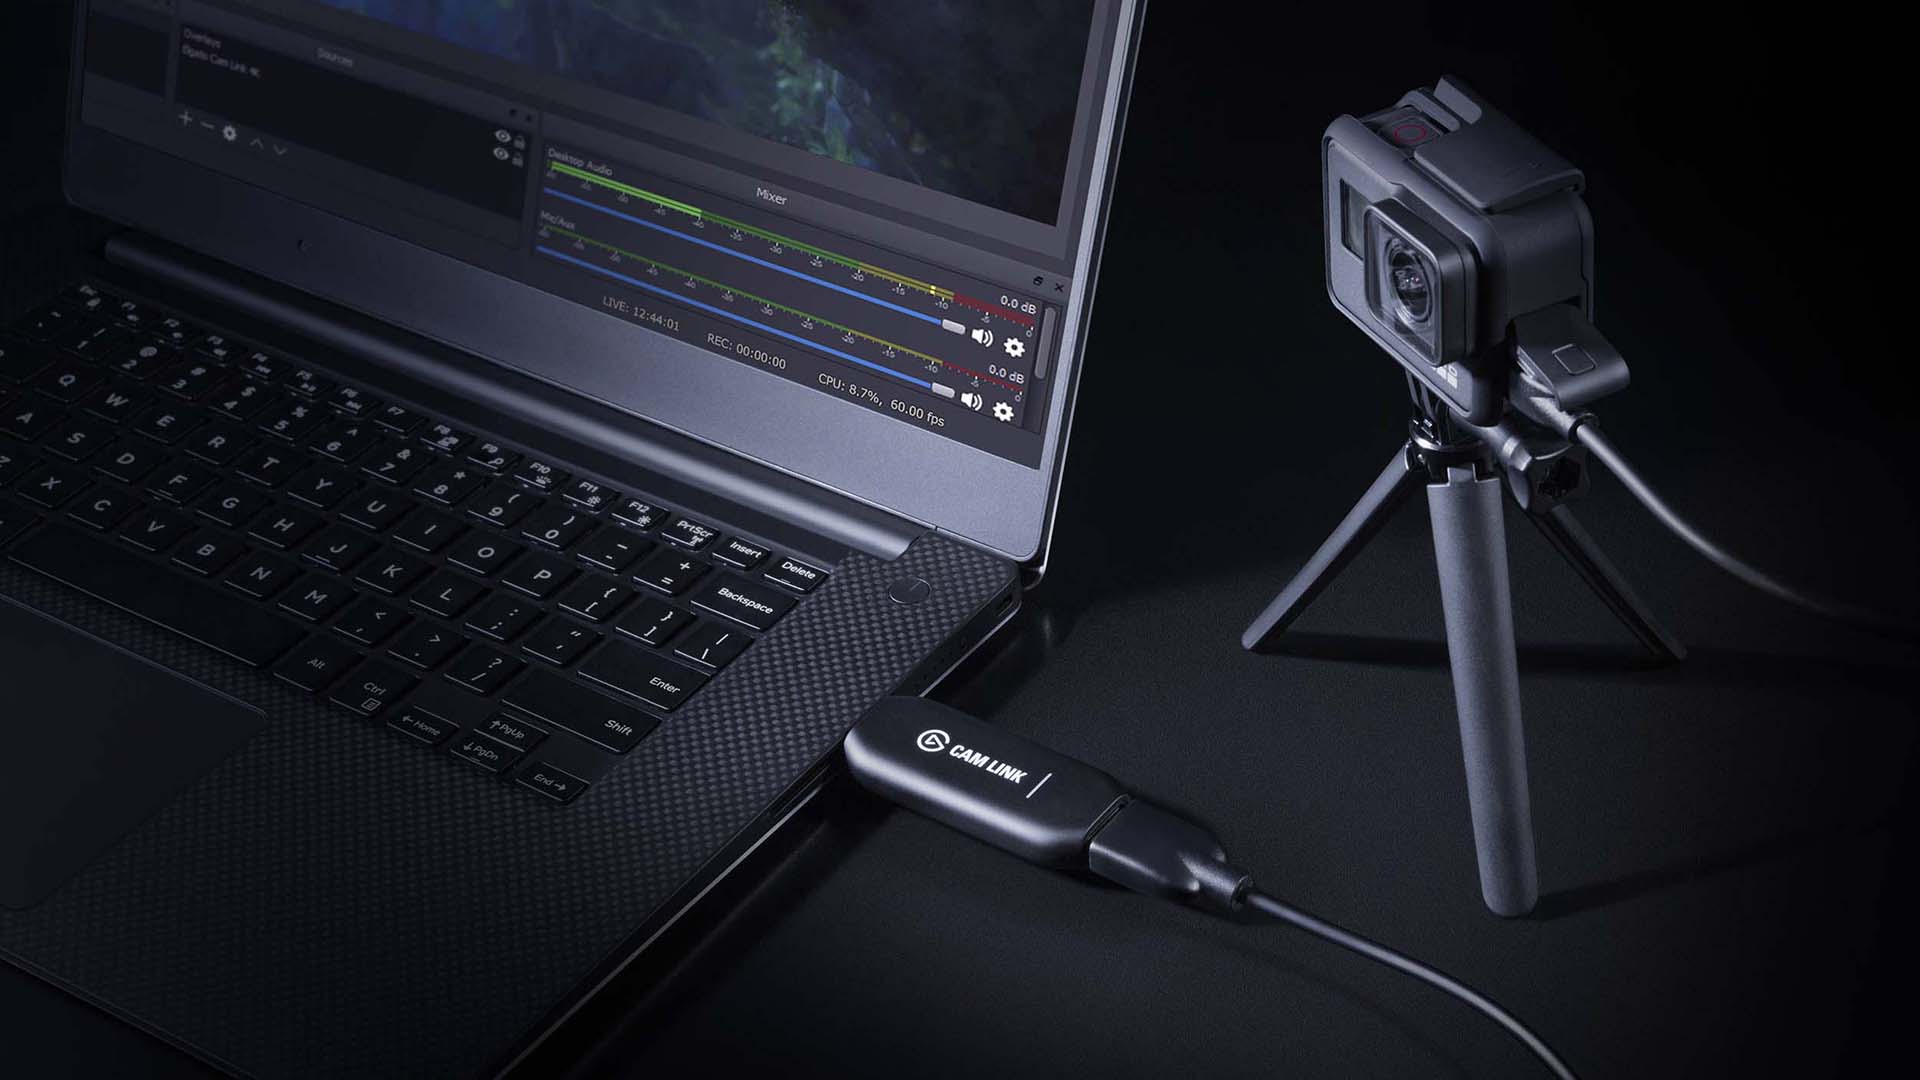 Elgato Cam Link 4K có thể giúp bạn kết nối máy ảnh của mình trực tiếp với máy tính để có được chất lượng hình ảnh 4K với độ trễ thấp. Xem video hoặc stream trực tiếp với chất lượng cao nhất nhờ vào Cam Link 4K.